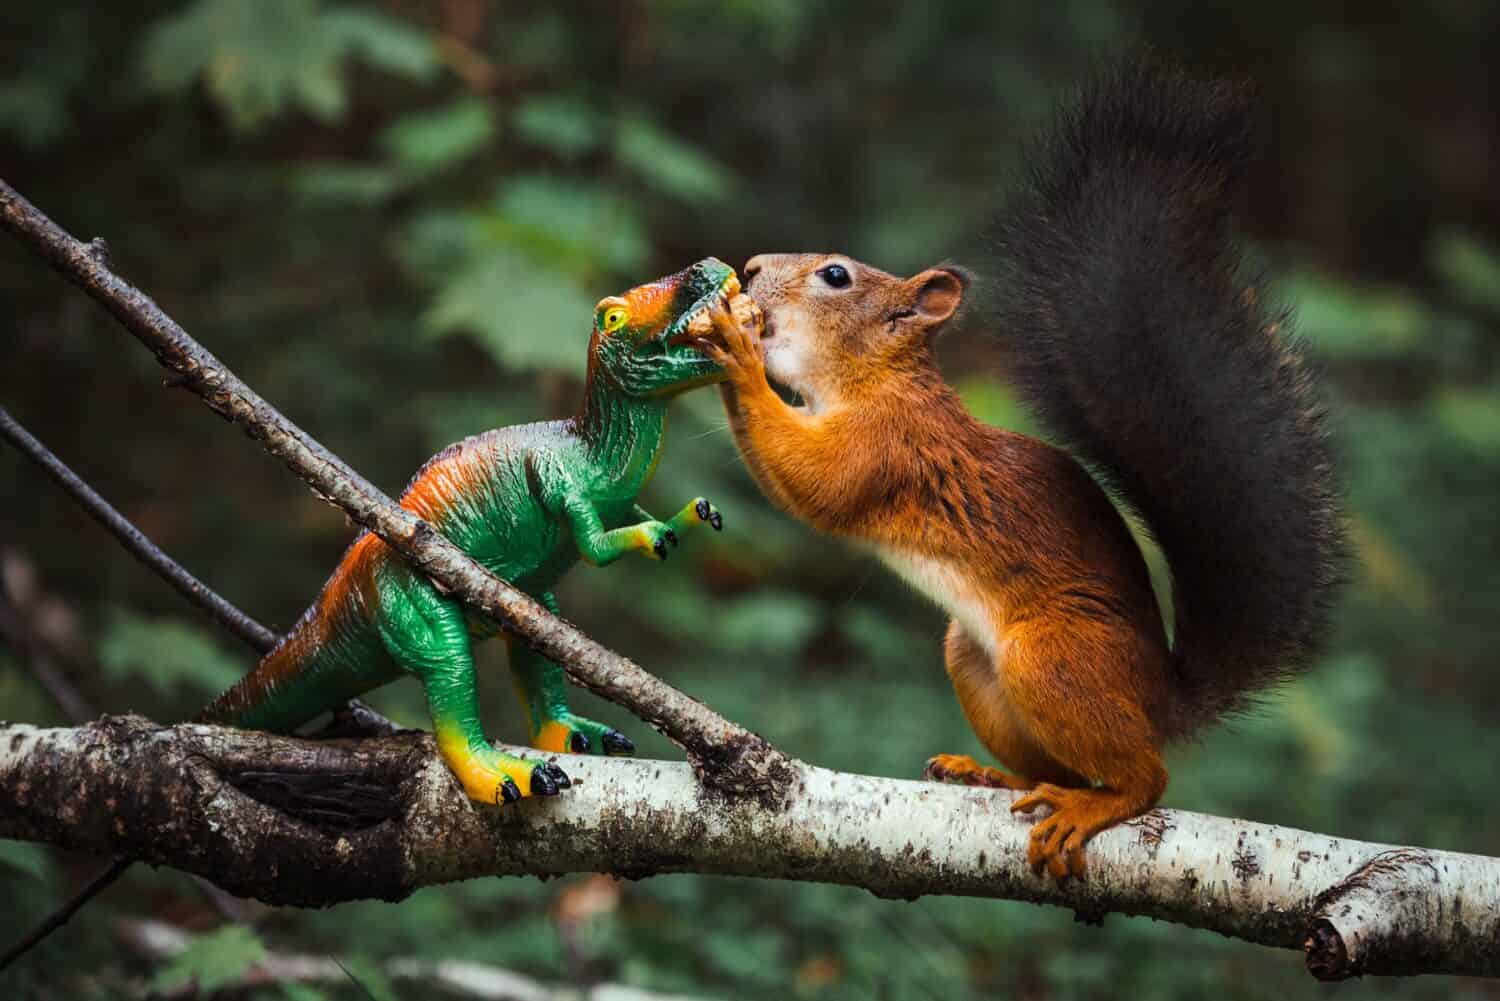 Uno scoiattolo rosso prende il cibo da un dinosauro giocattolo nella foresta.